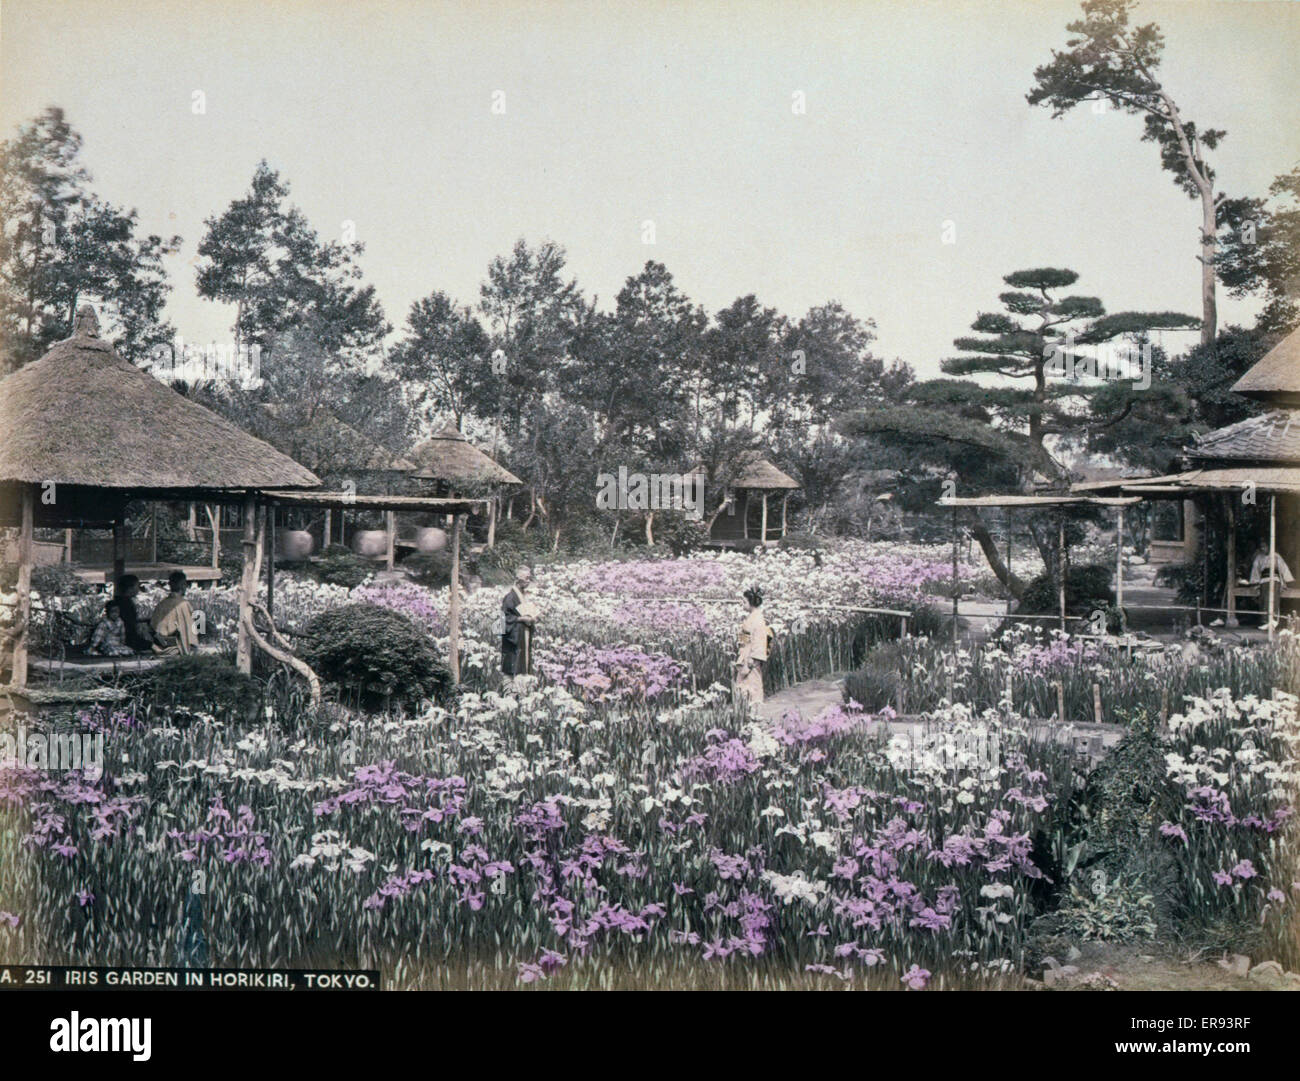 Irisgarten in Horikiri, Tokio. Foto zeigt blühende Schwertlilien im Horikiri Iris Garten in Tokio. Aquarelle-Zeichnungen auf dem Berg zeigen strohgedeckte Gebäude im oberen rechten und Bäume Stroh um die Stämme in der linken unteren Ecke. Bis heute ca. 1890. Stockfoto